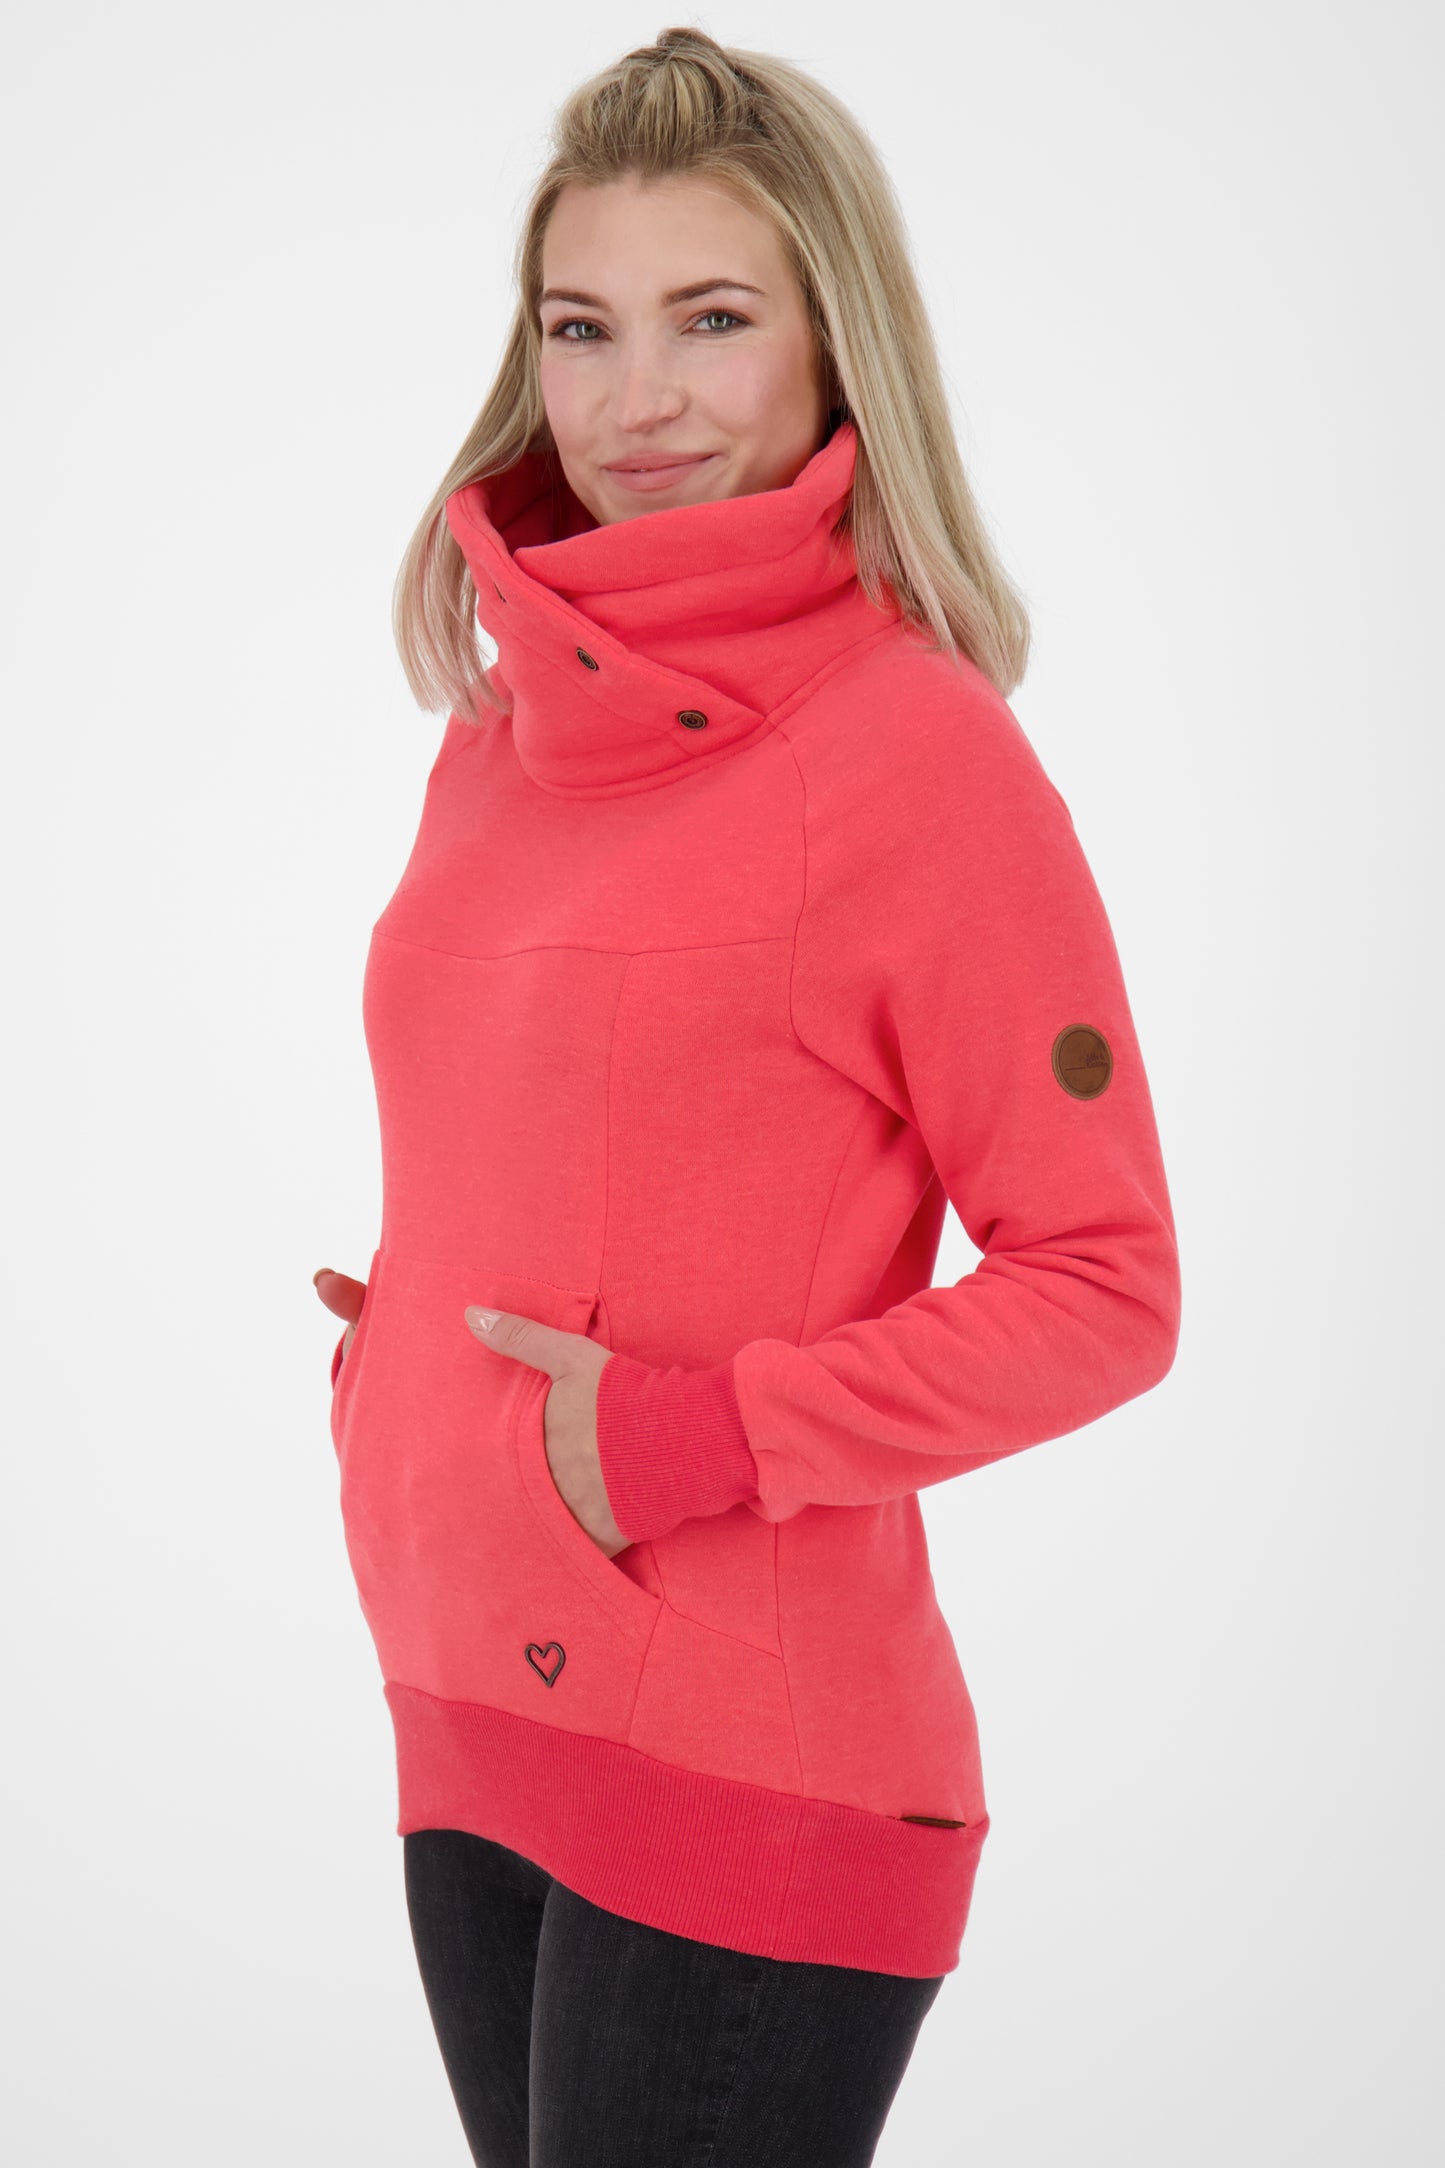 VioletAK A Stylishes Damen-Sweatshirt für das ganze Jahr Rot